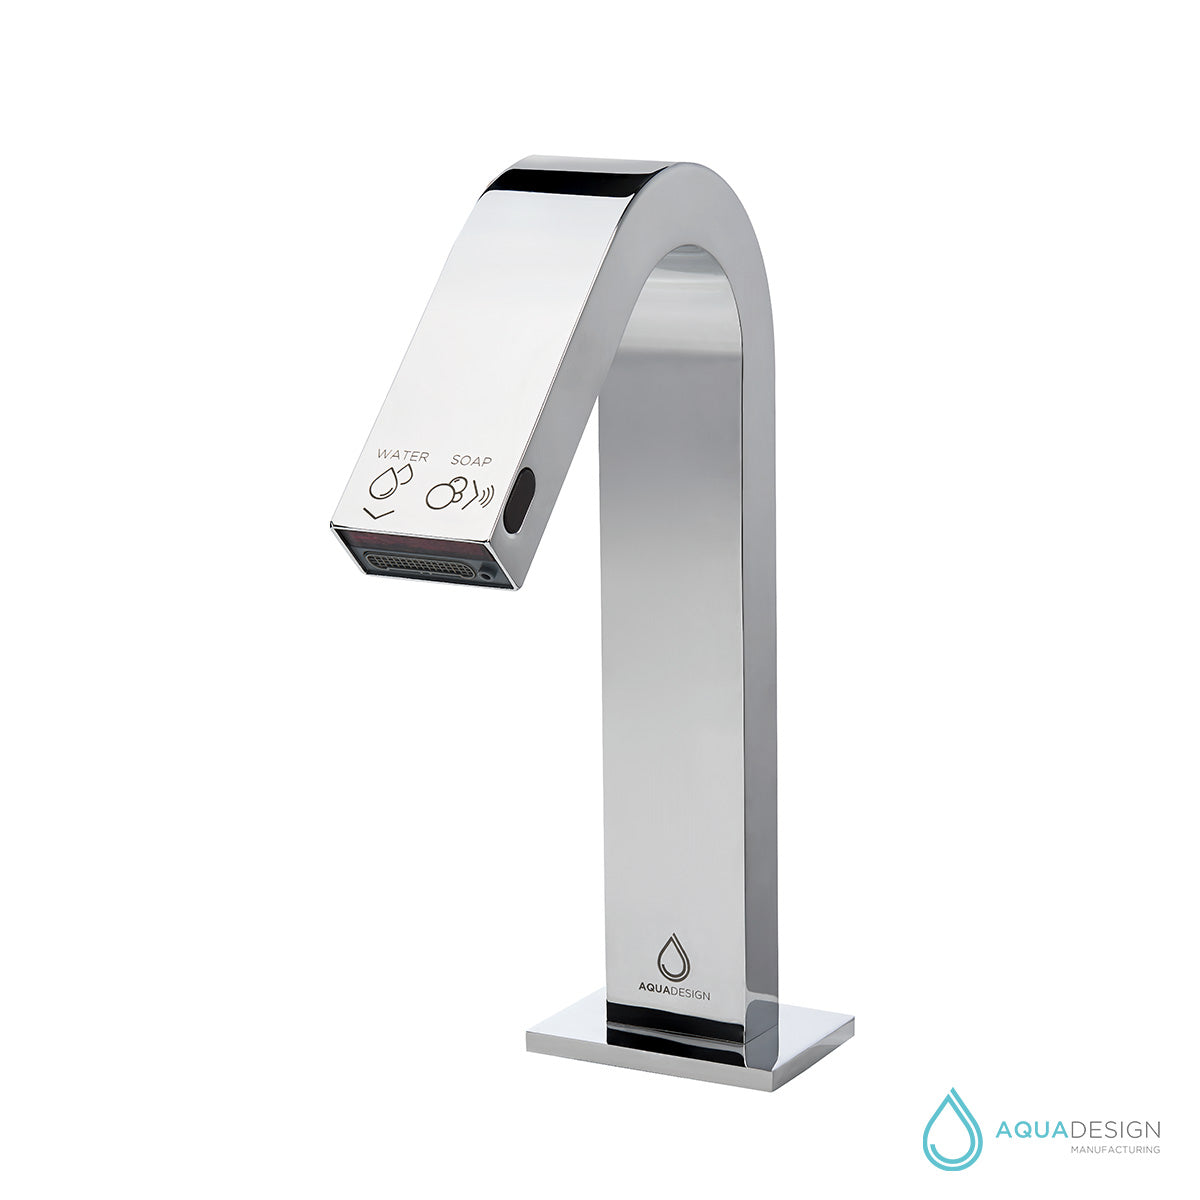 OM-1-L - Omnia Water and Soap Sensor Faucet